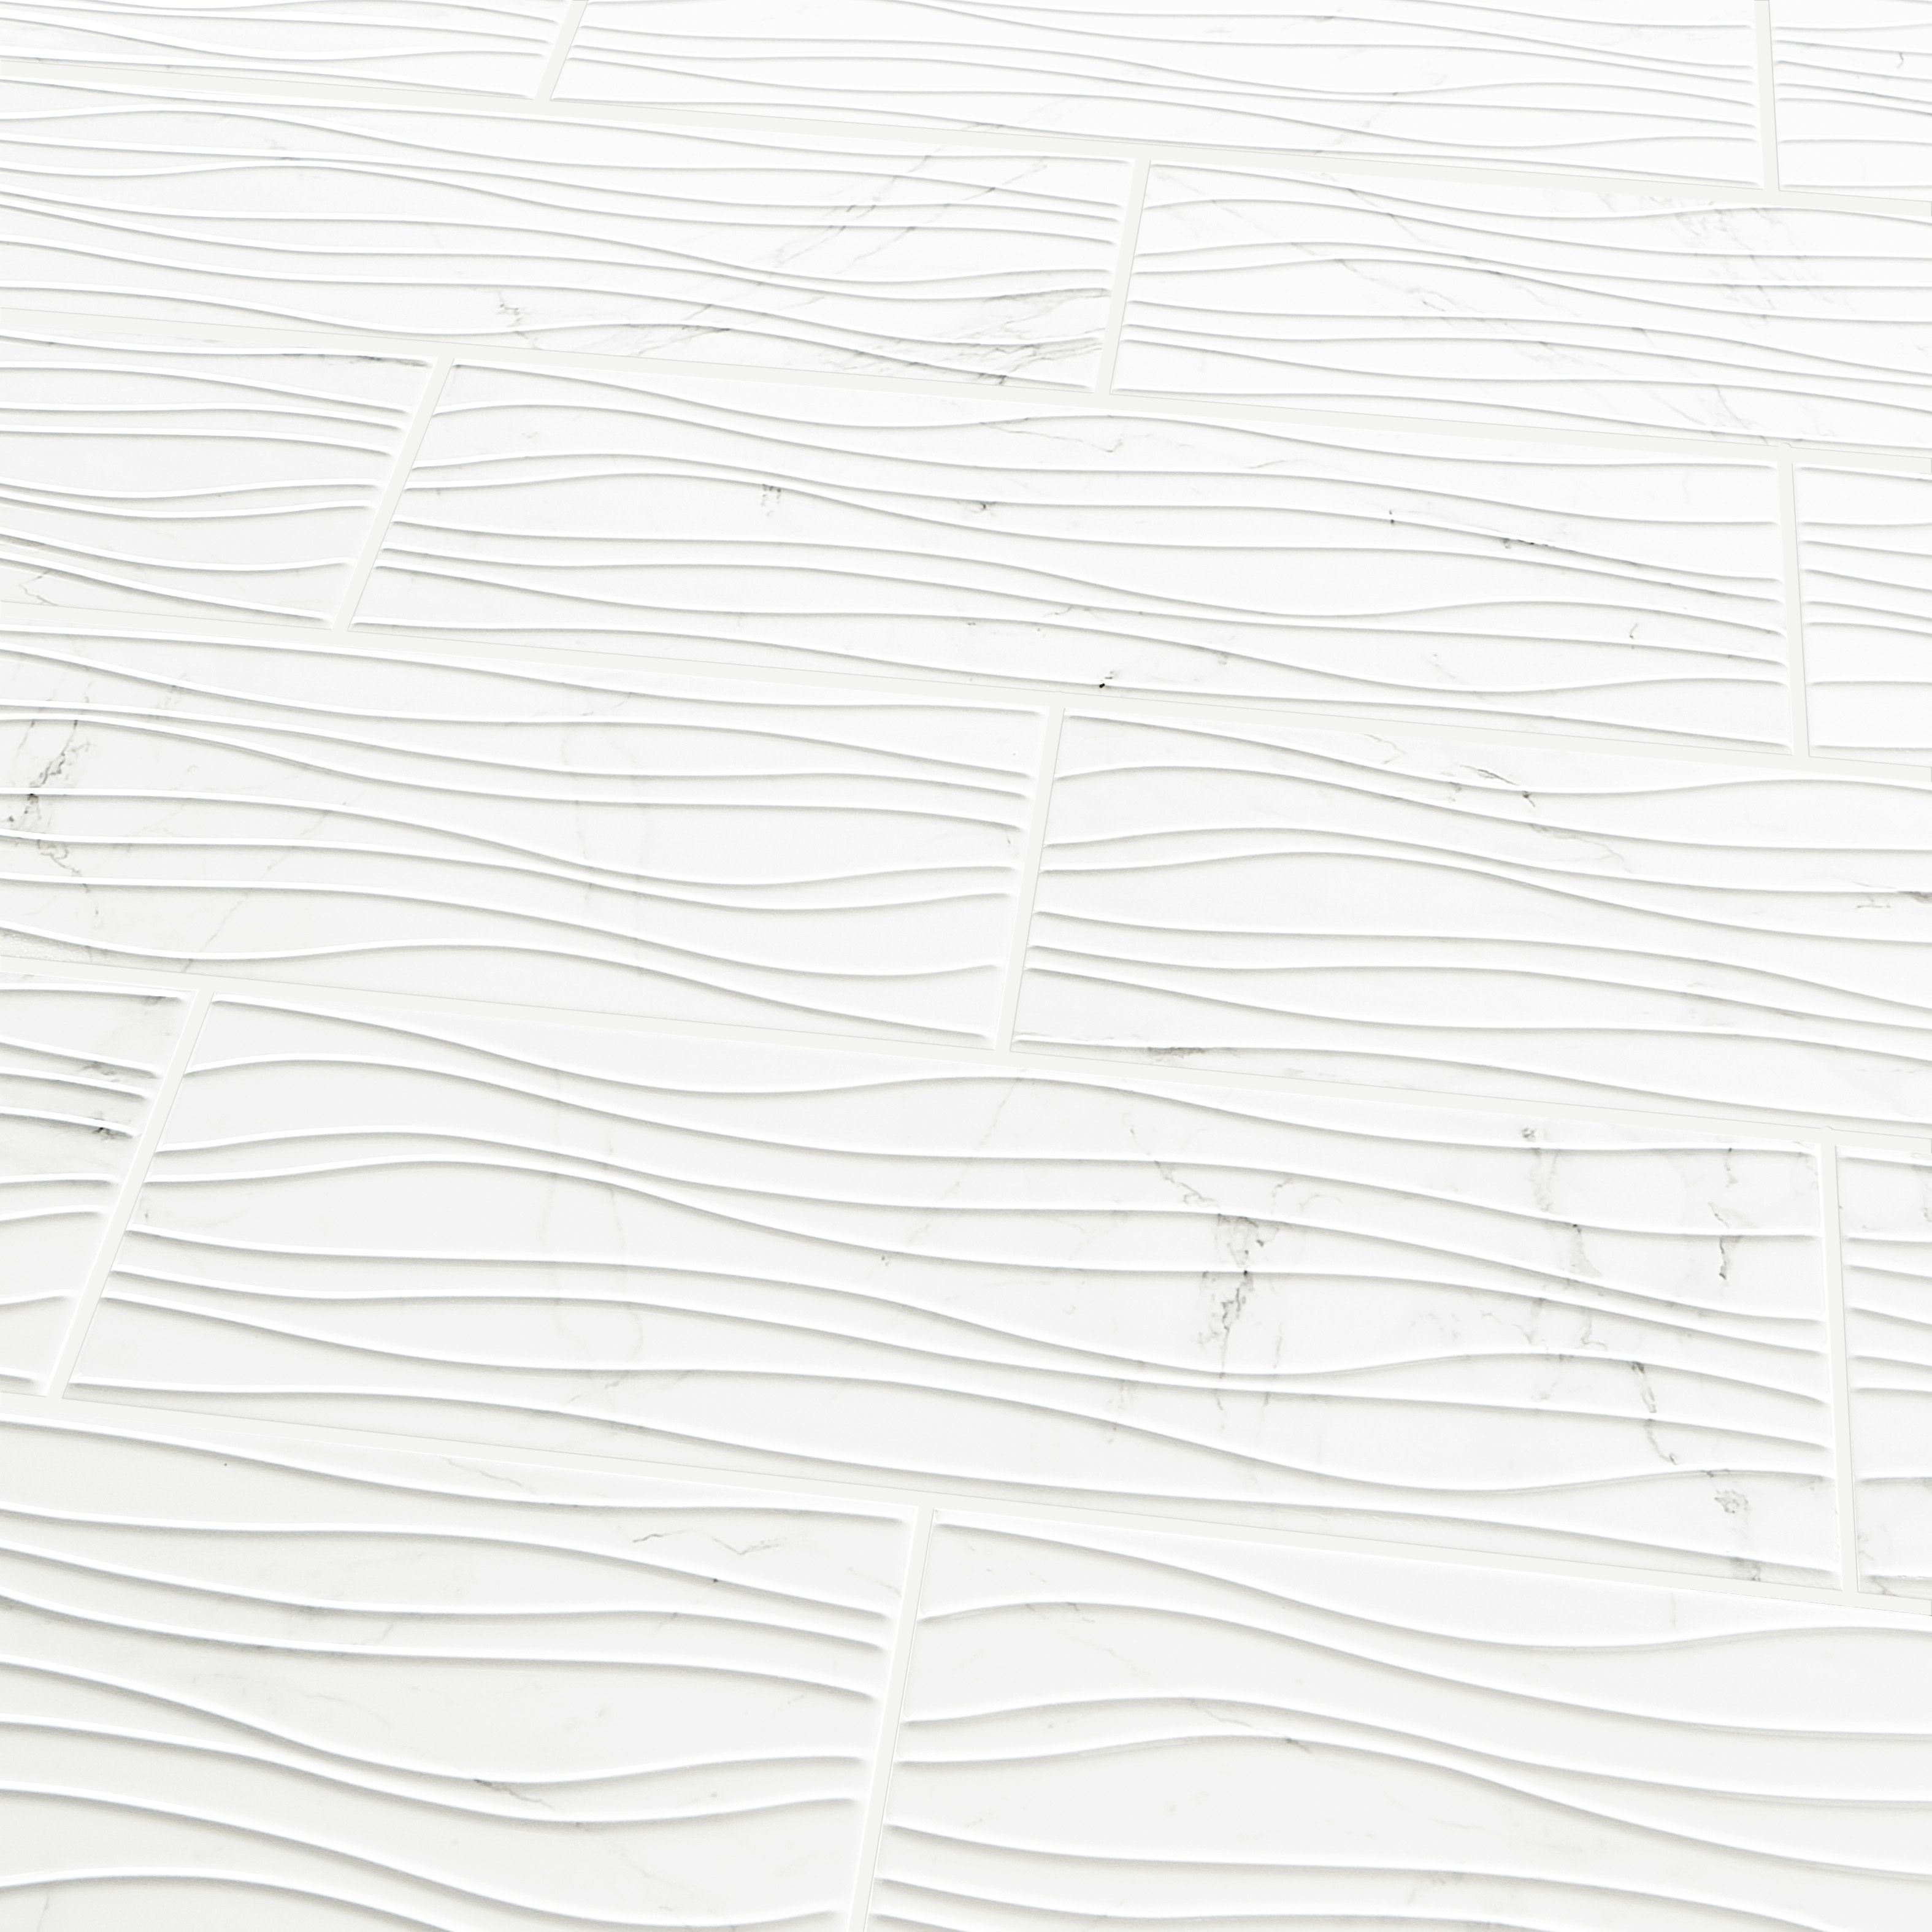 Elegance White Gloss 3D Decor Marble effect Ceramic Wall Tile Sample